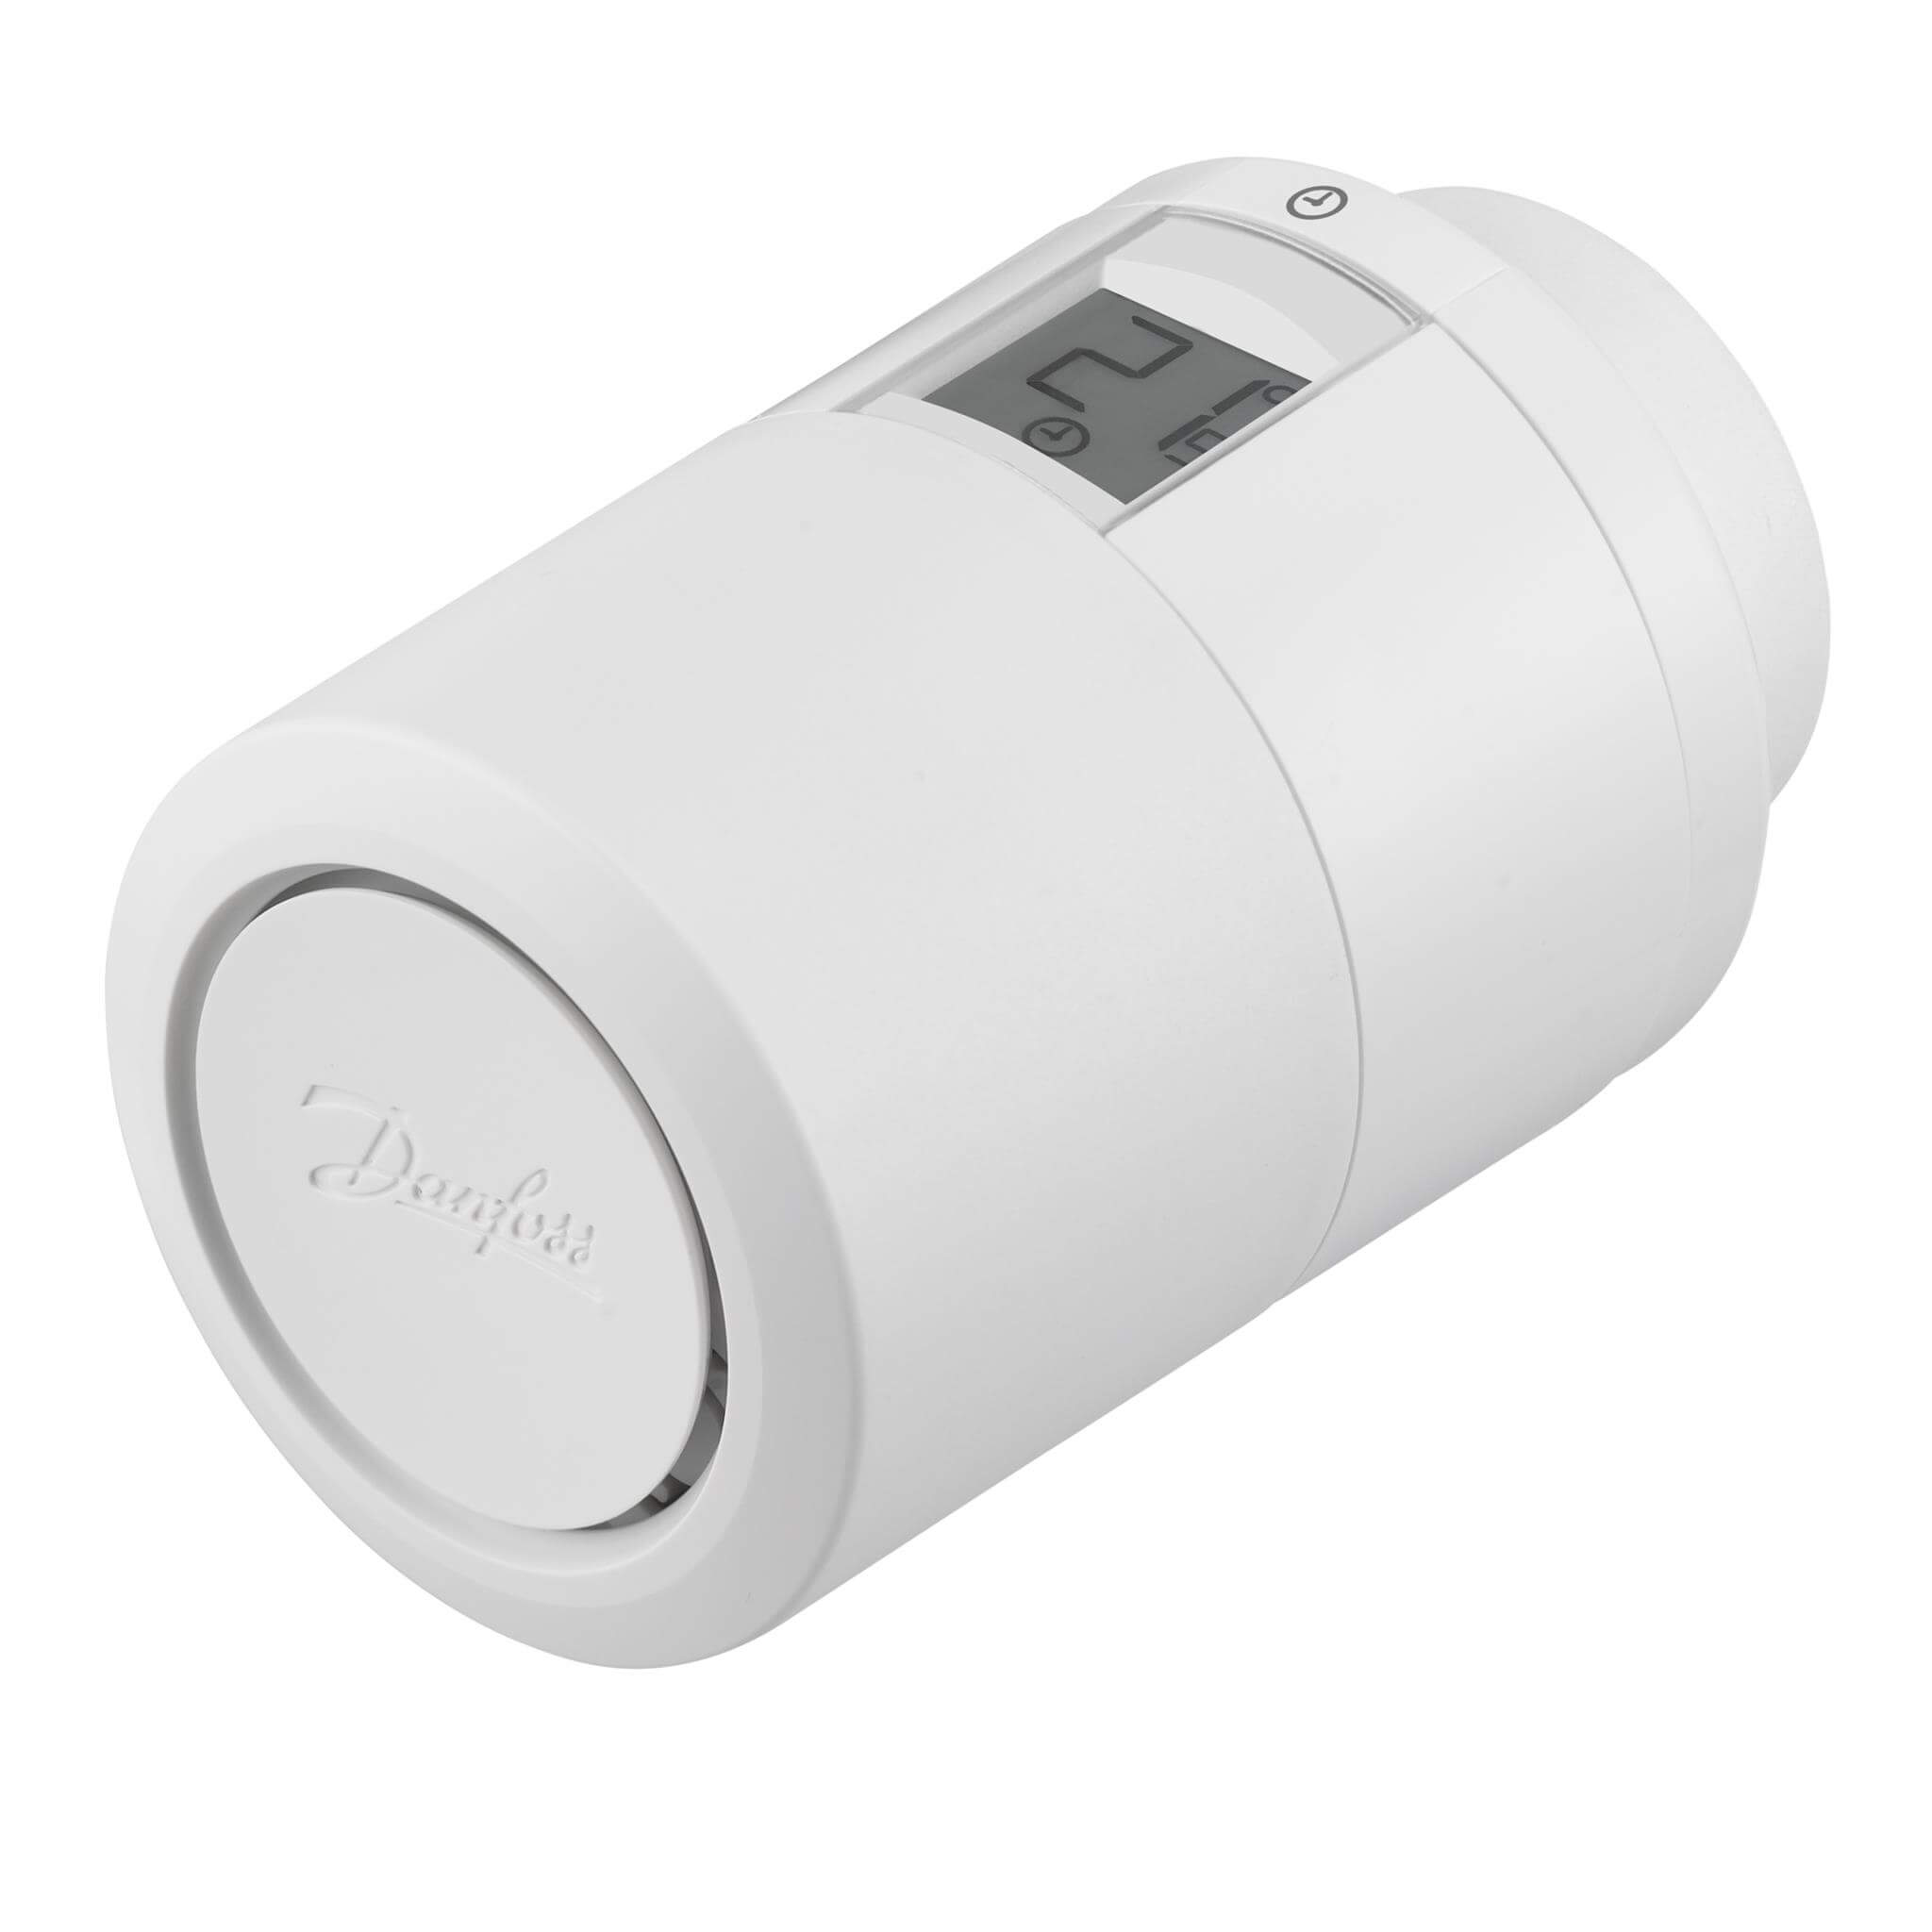 Термостатический элемент Danfoss Eco электронный программируемый c Bluetooth ™ в комплекте с адаптерами RTR и K (М30×1,5)